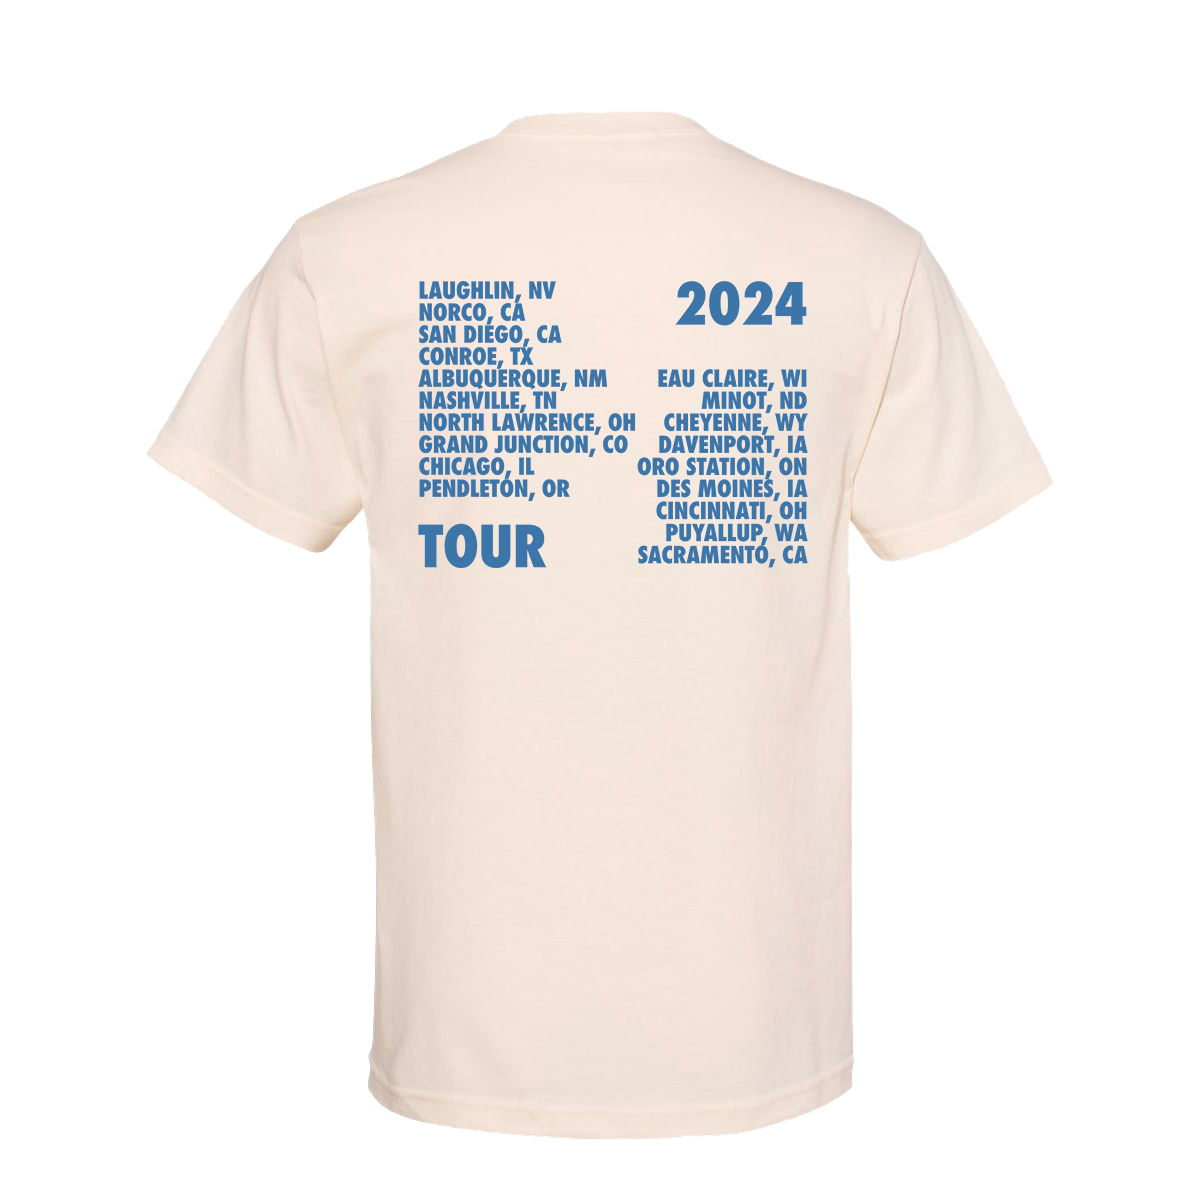 Tour 2024 Logo Tee